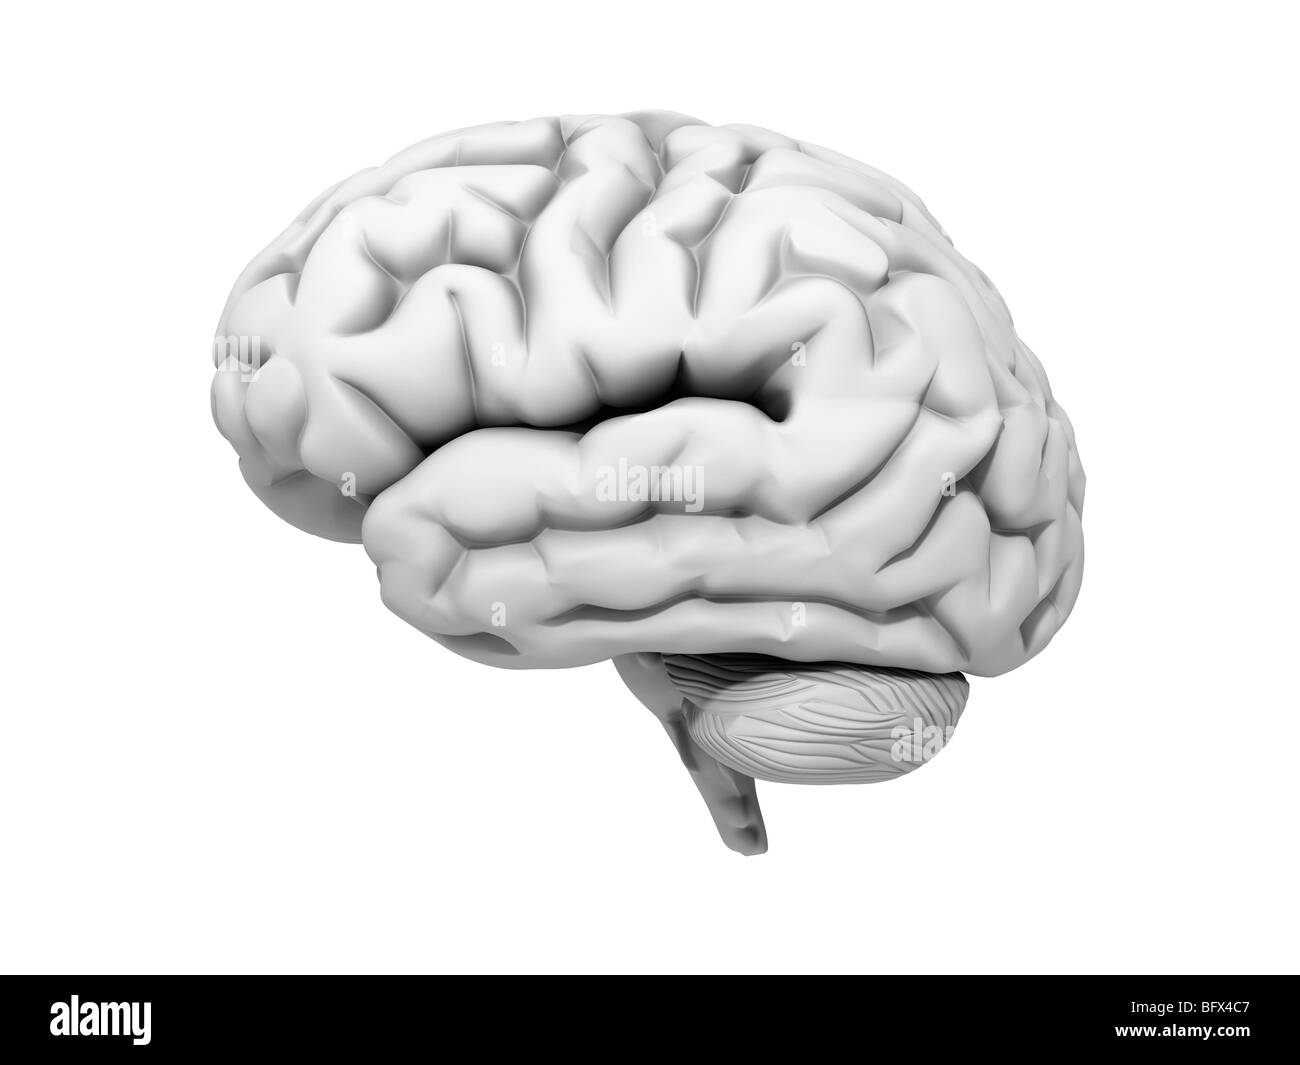 Brain against white background, 3D illustration. Stock Photo